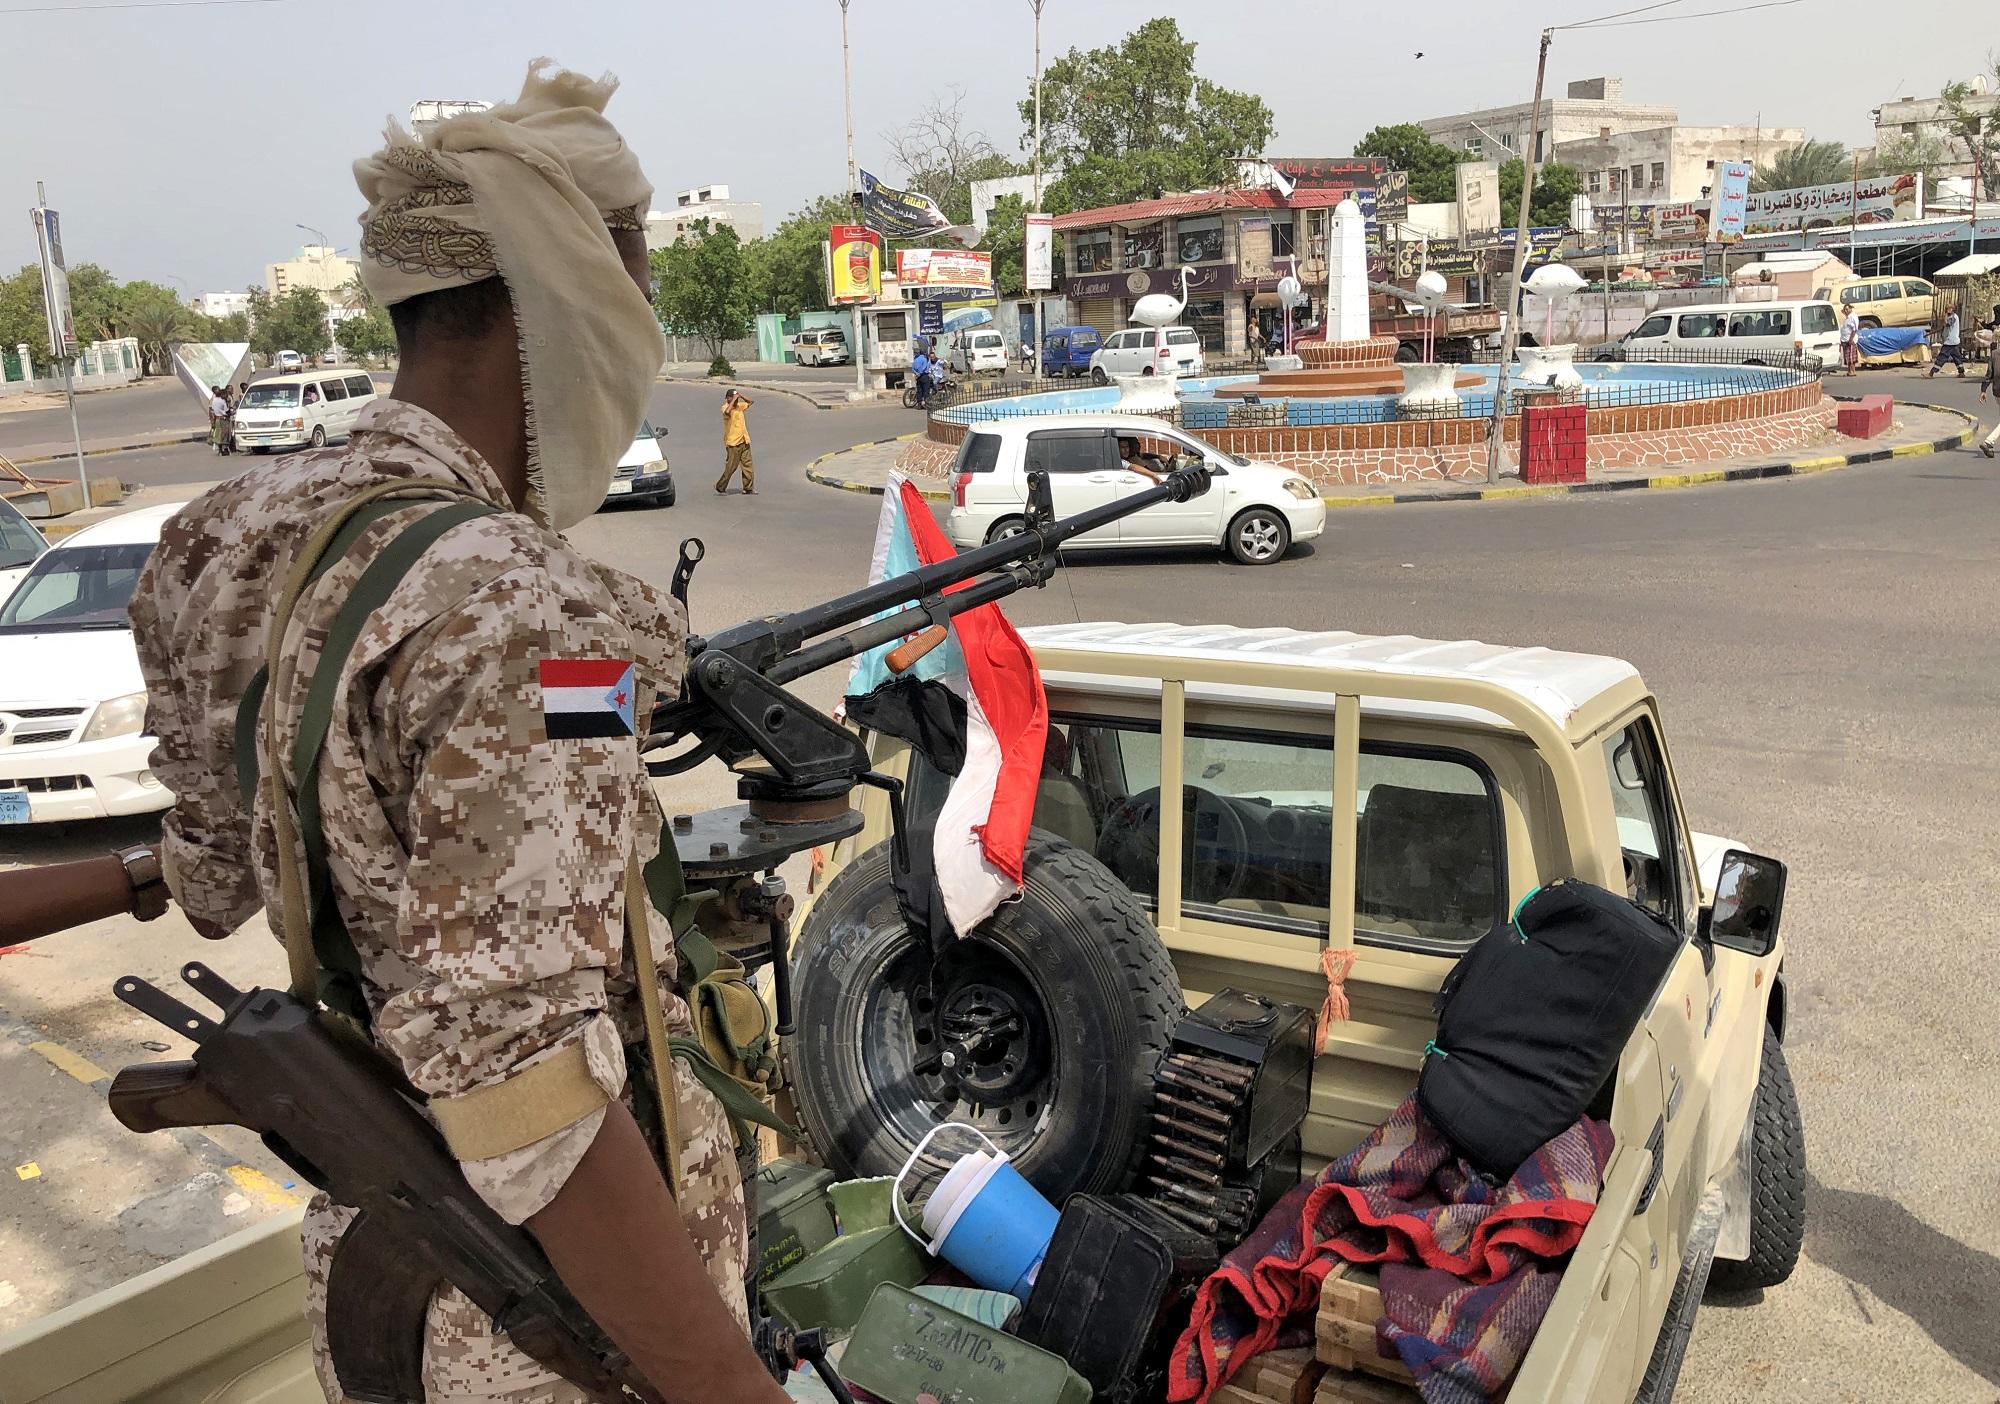 اللجنة وصلت إلى عدن "لبحث مسألة انسحاب قوات الحزام الامني من المعسكرات والمقرات الحكومية التي سيطرت عليها" في عدن. أ ف ب 